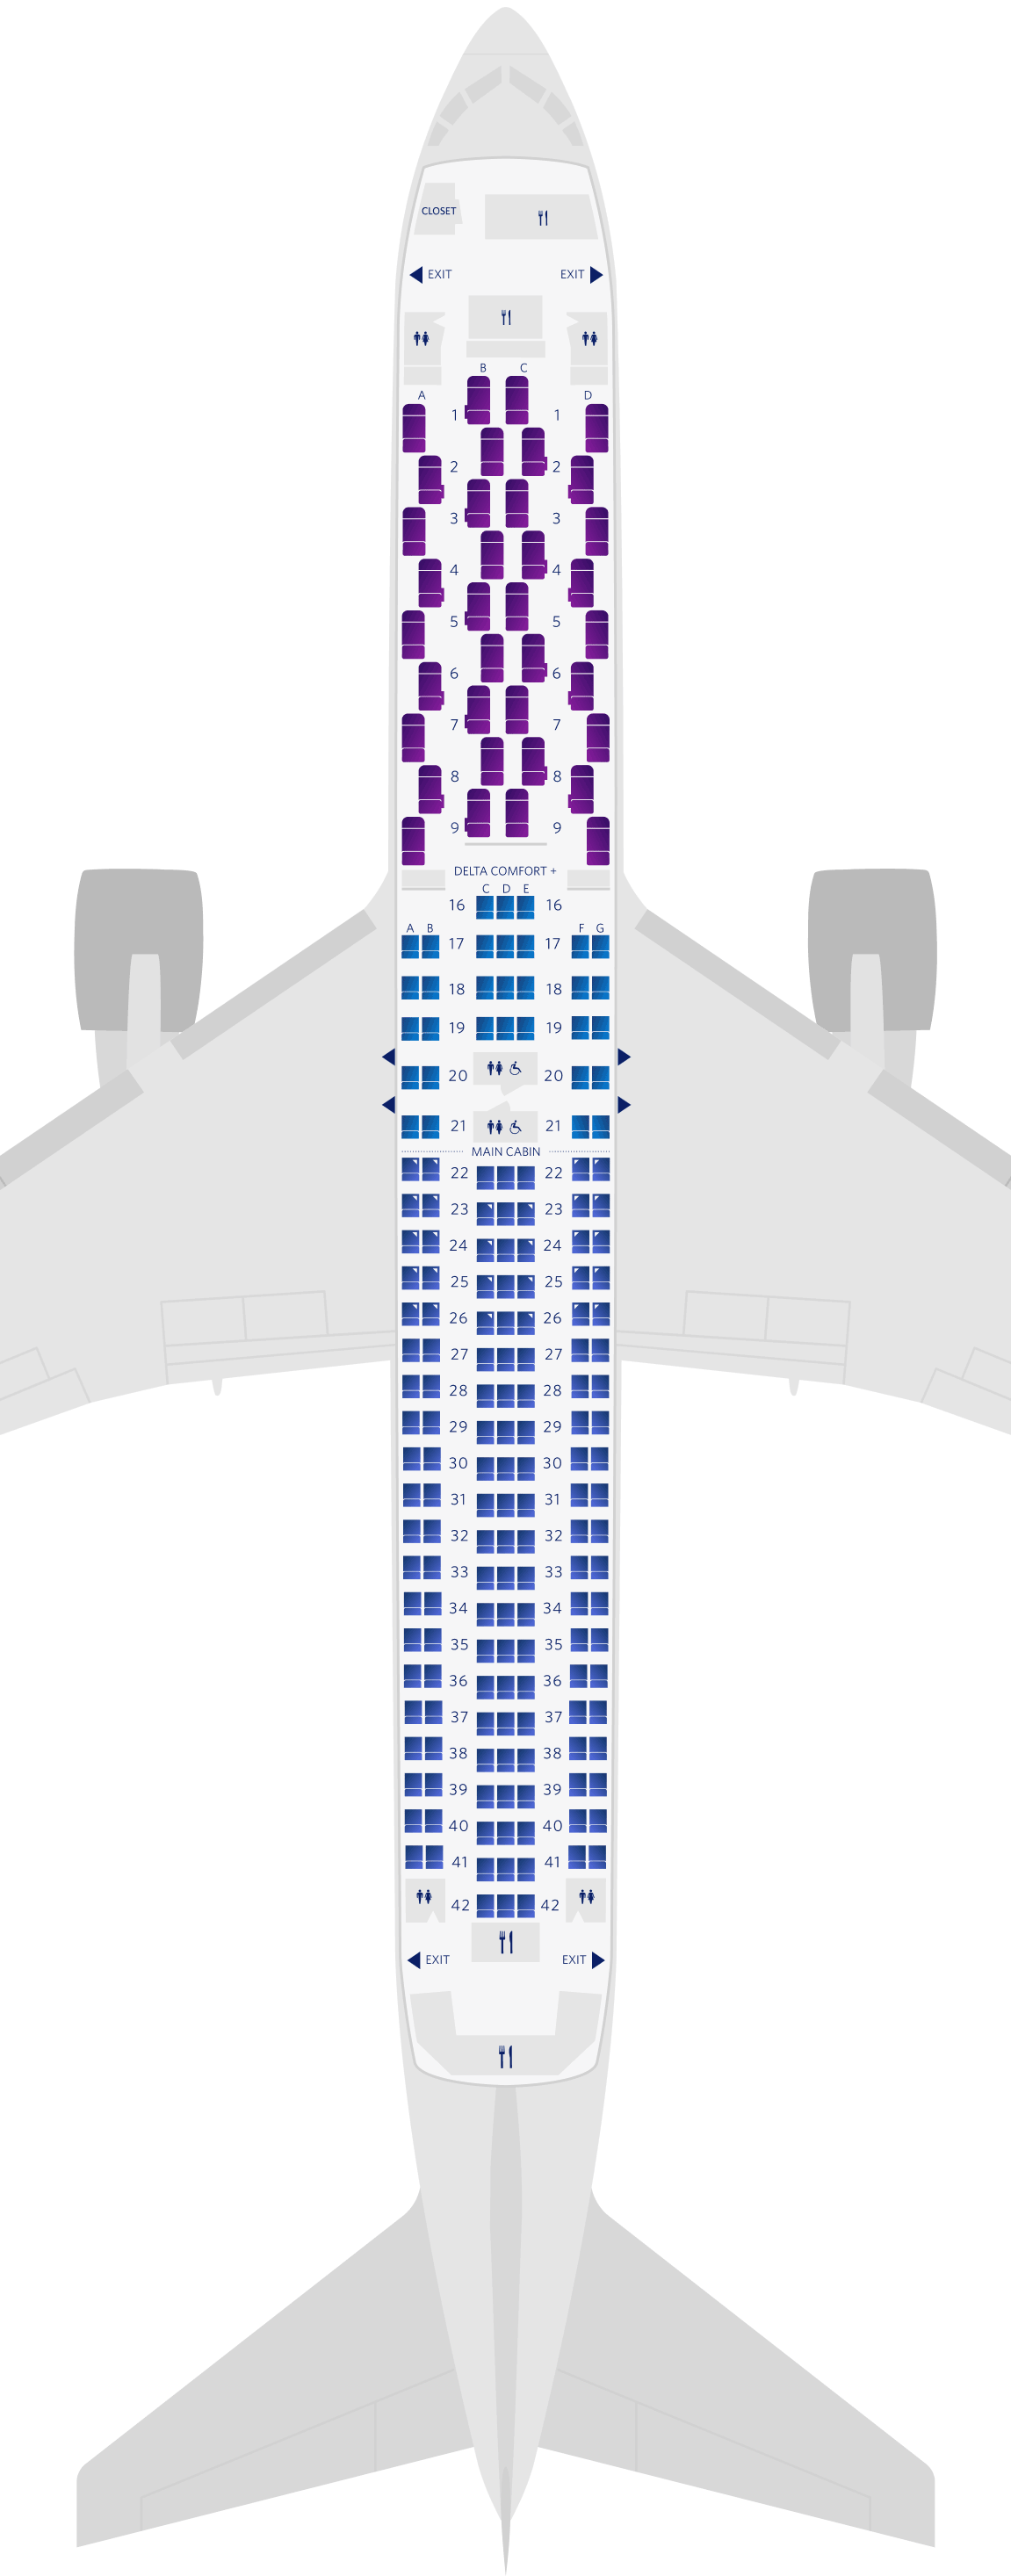 Boeing 767-300ER (76L) Seat Map